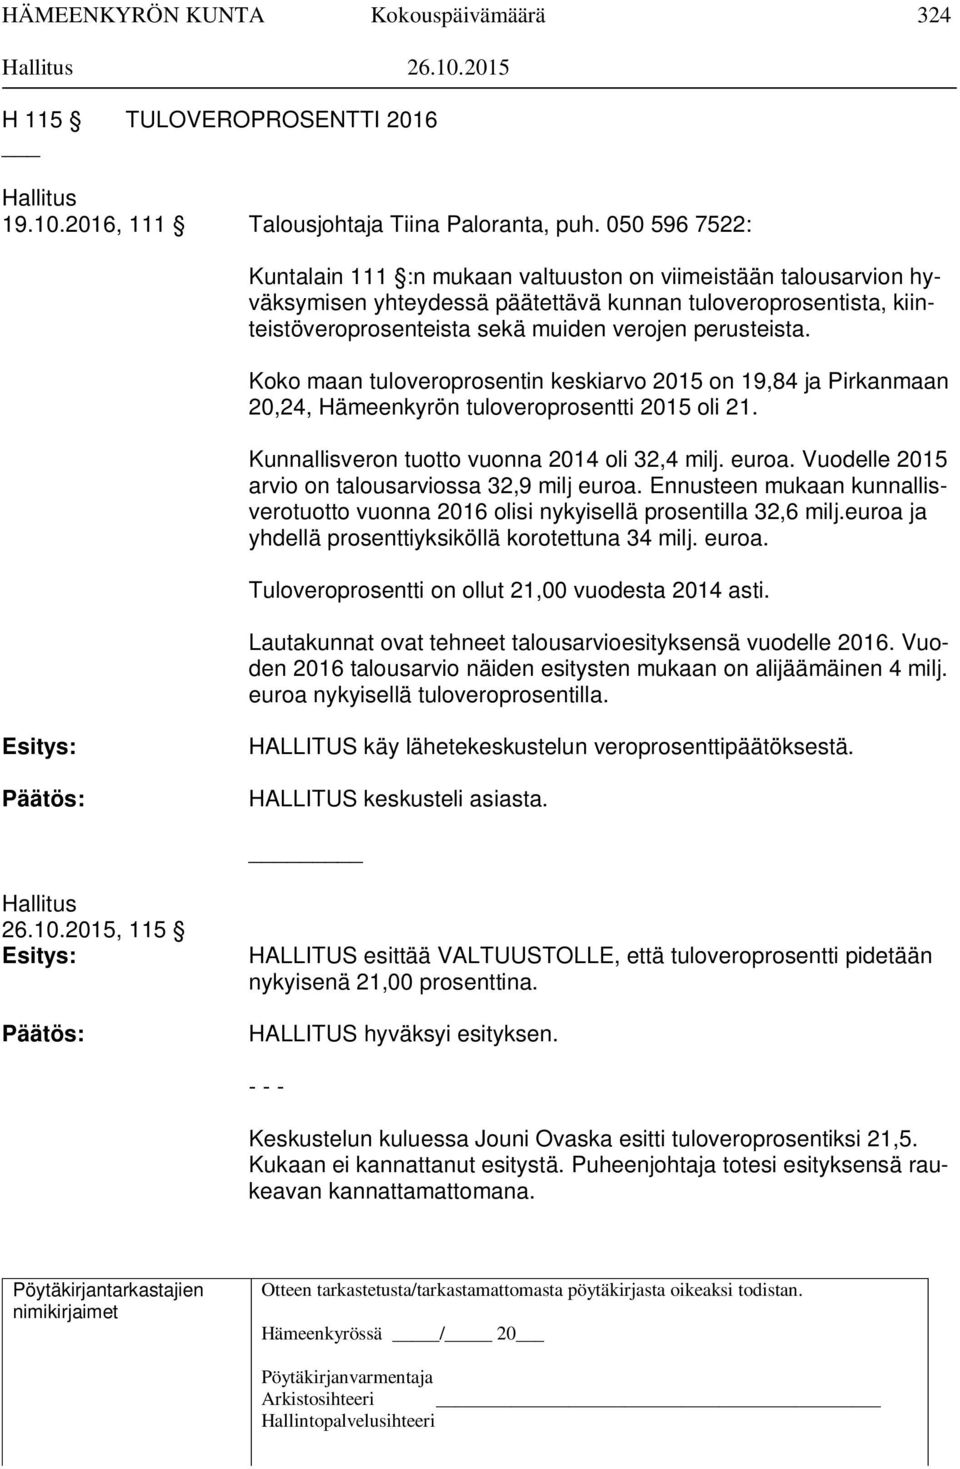 Koko maan tuloveroprosentin keskiarvo 2015 on 19,84 ja Pirkanmaan 20,24, Hämeenkyrön tuloveroprosentti 2015 oli 21. Kunnallisveron tuotto vuonna 2014 oli 32,4 milj. euroa.